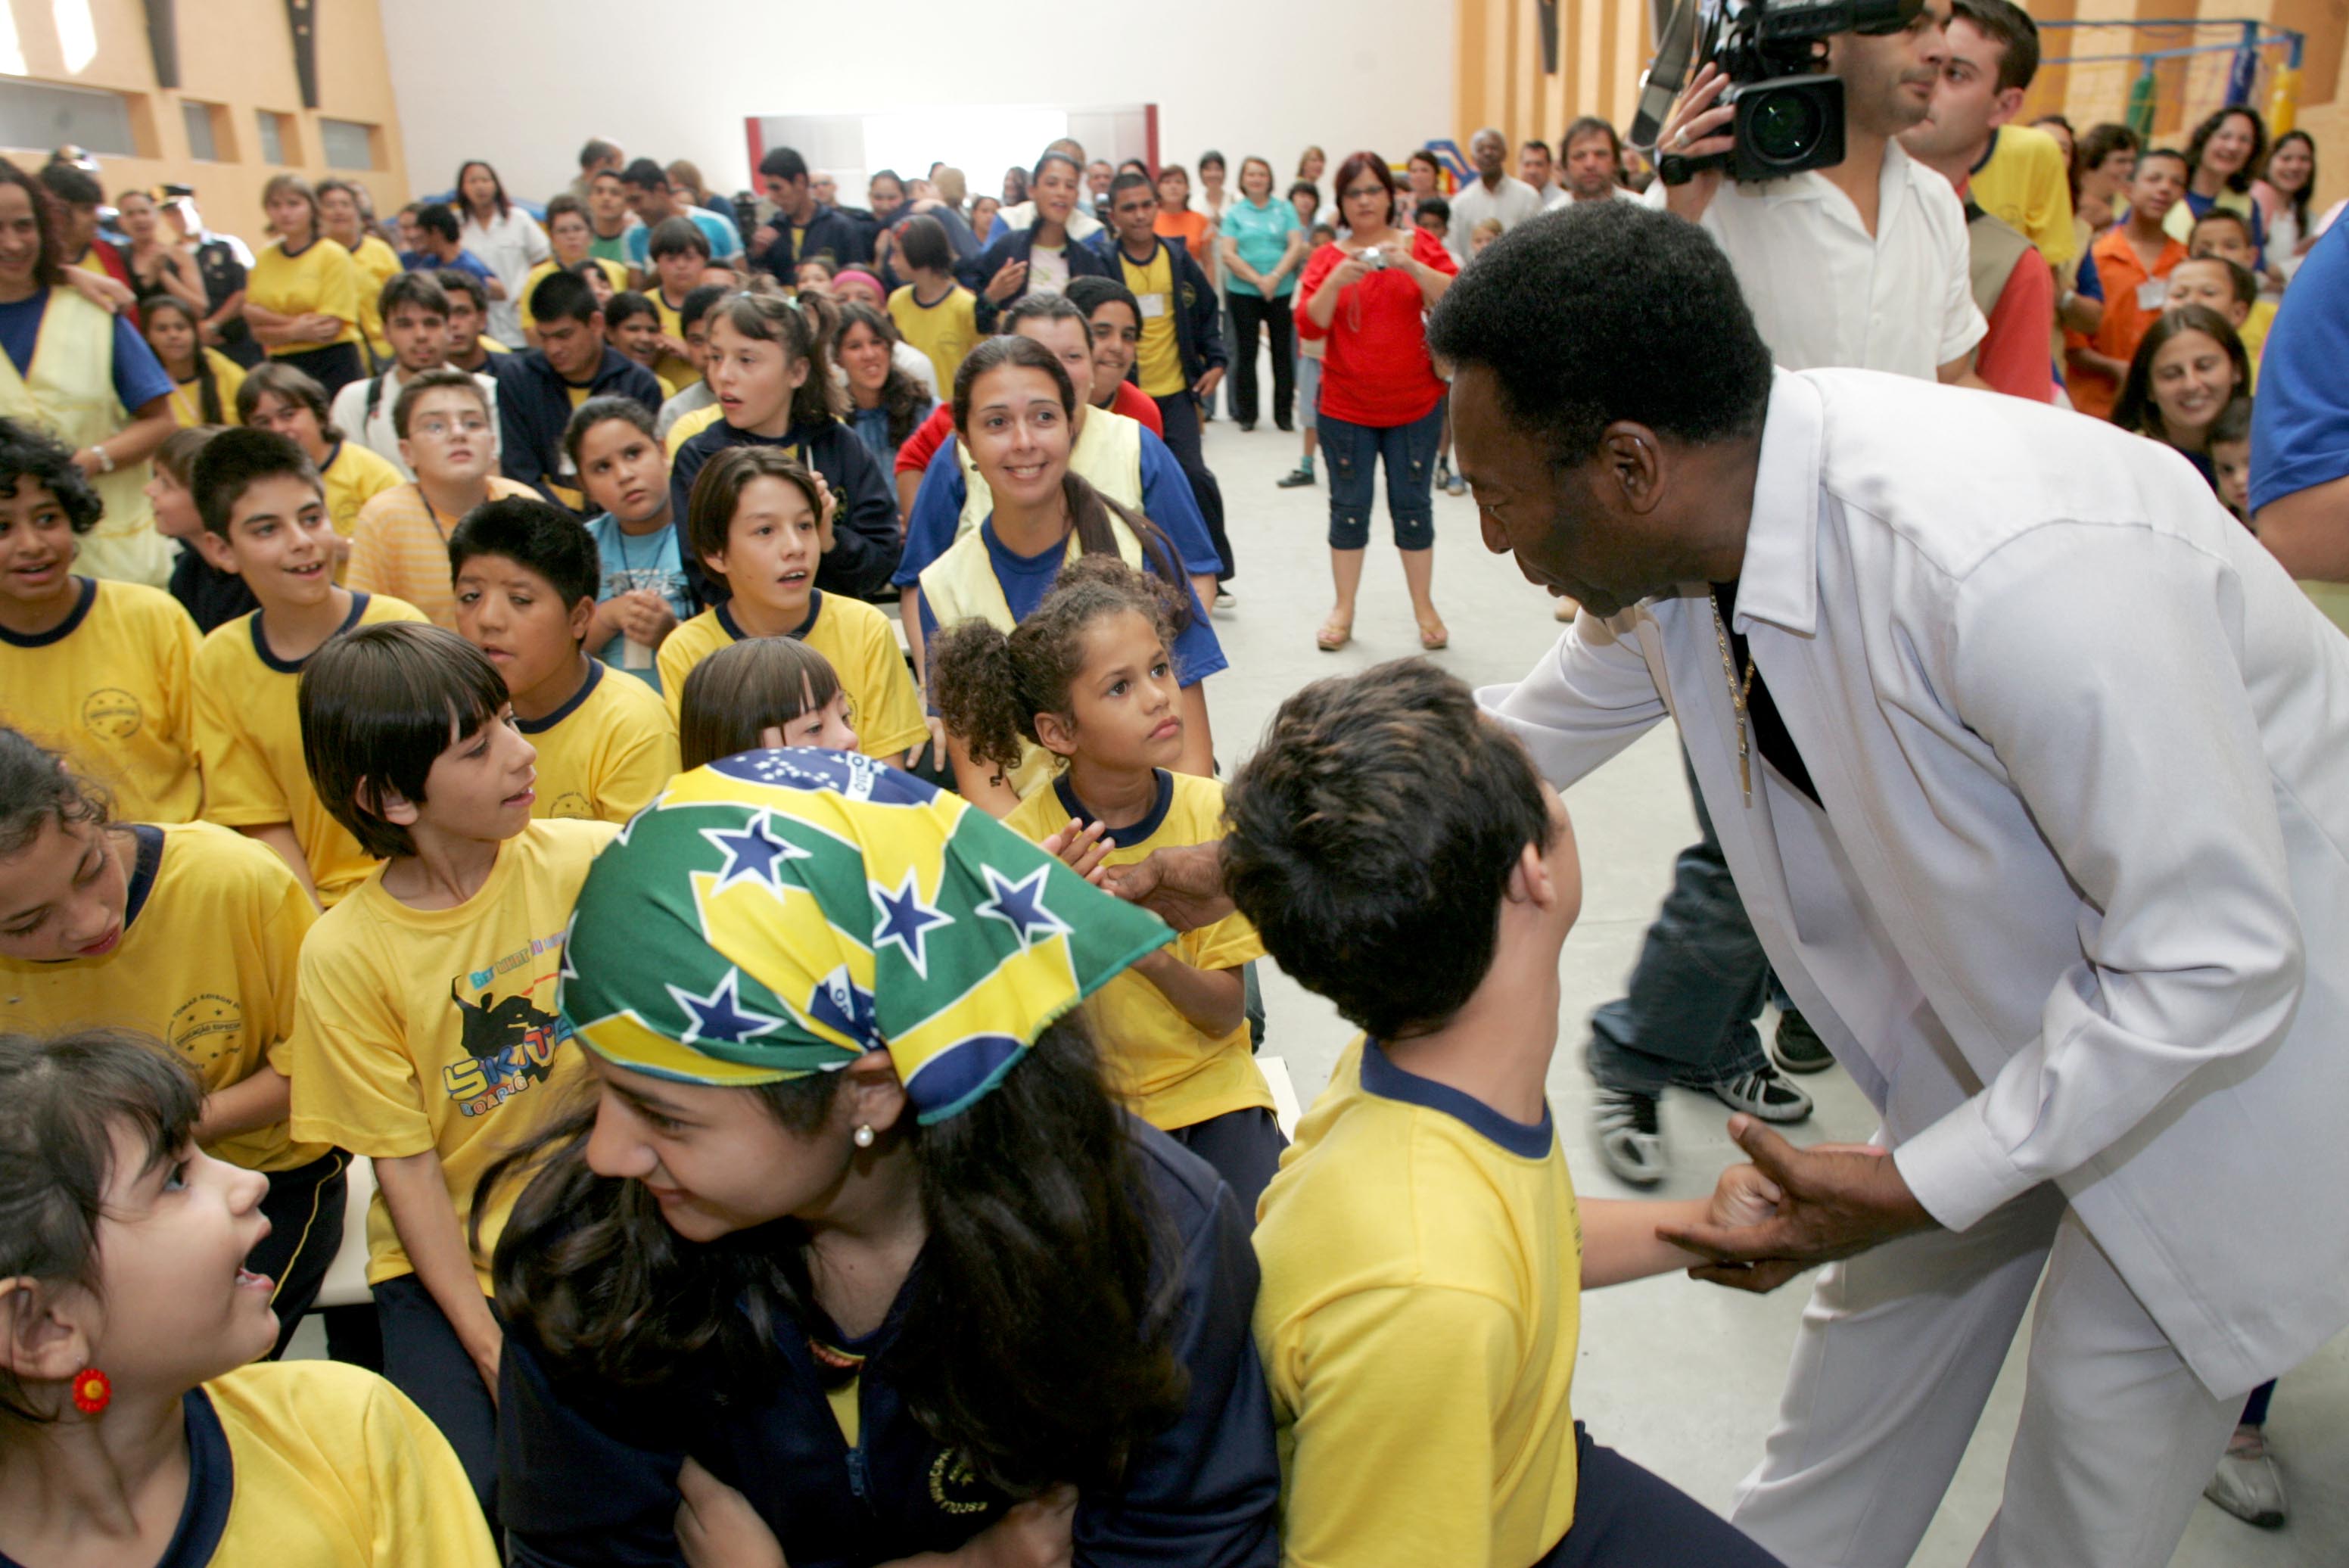 A Importância do Rei Pelé para a Educação